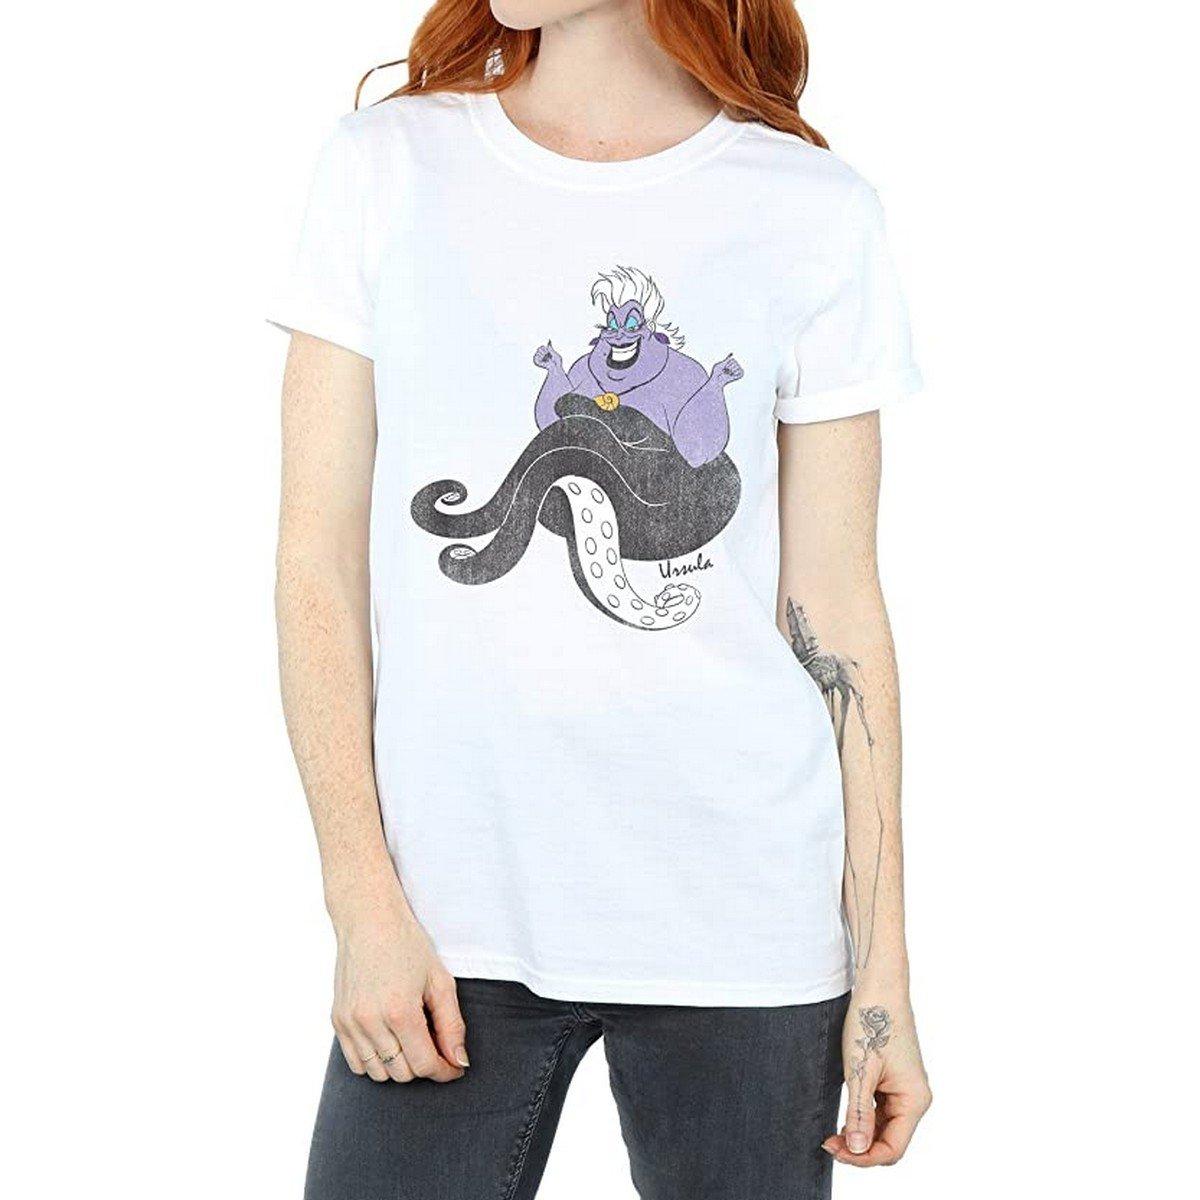 Tshirt Damen Weiss XL von The Little Mermaid